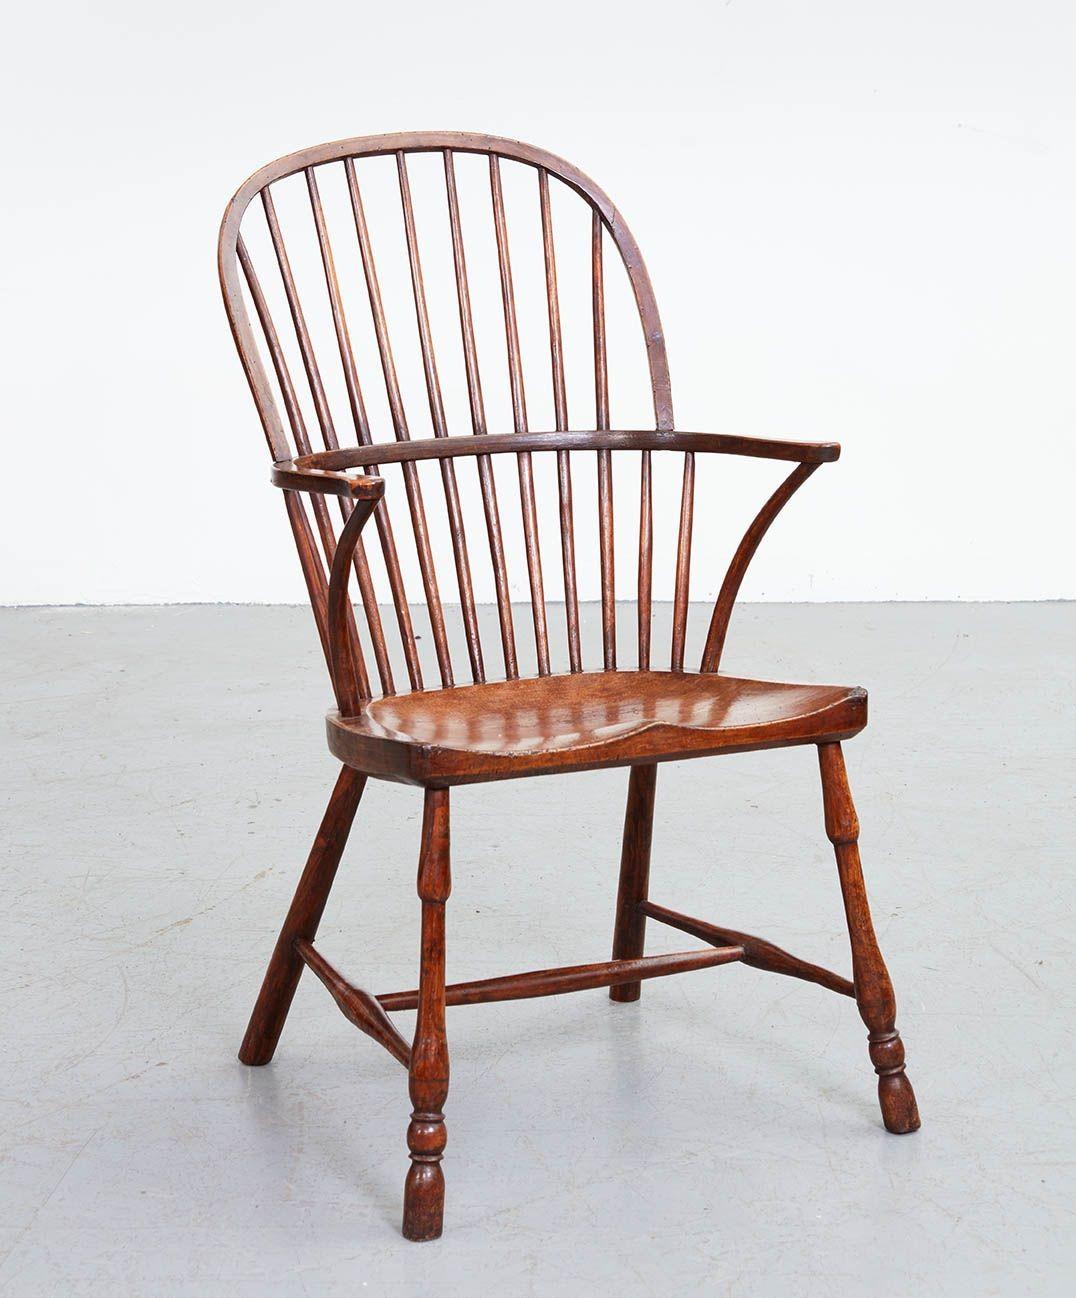 Ein schottischer Windsor-Stuhl des frühen 19. Jahrhunderts aus patiniertem Ulmenholz mit Bügelrücken, Sattelsitz, gedrechselten Vorderbeinen und adhäsiven Hinterbeinen, die durch gedrechselte H-Strecker verbunden sind. Klassische Form und charmante